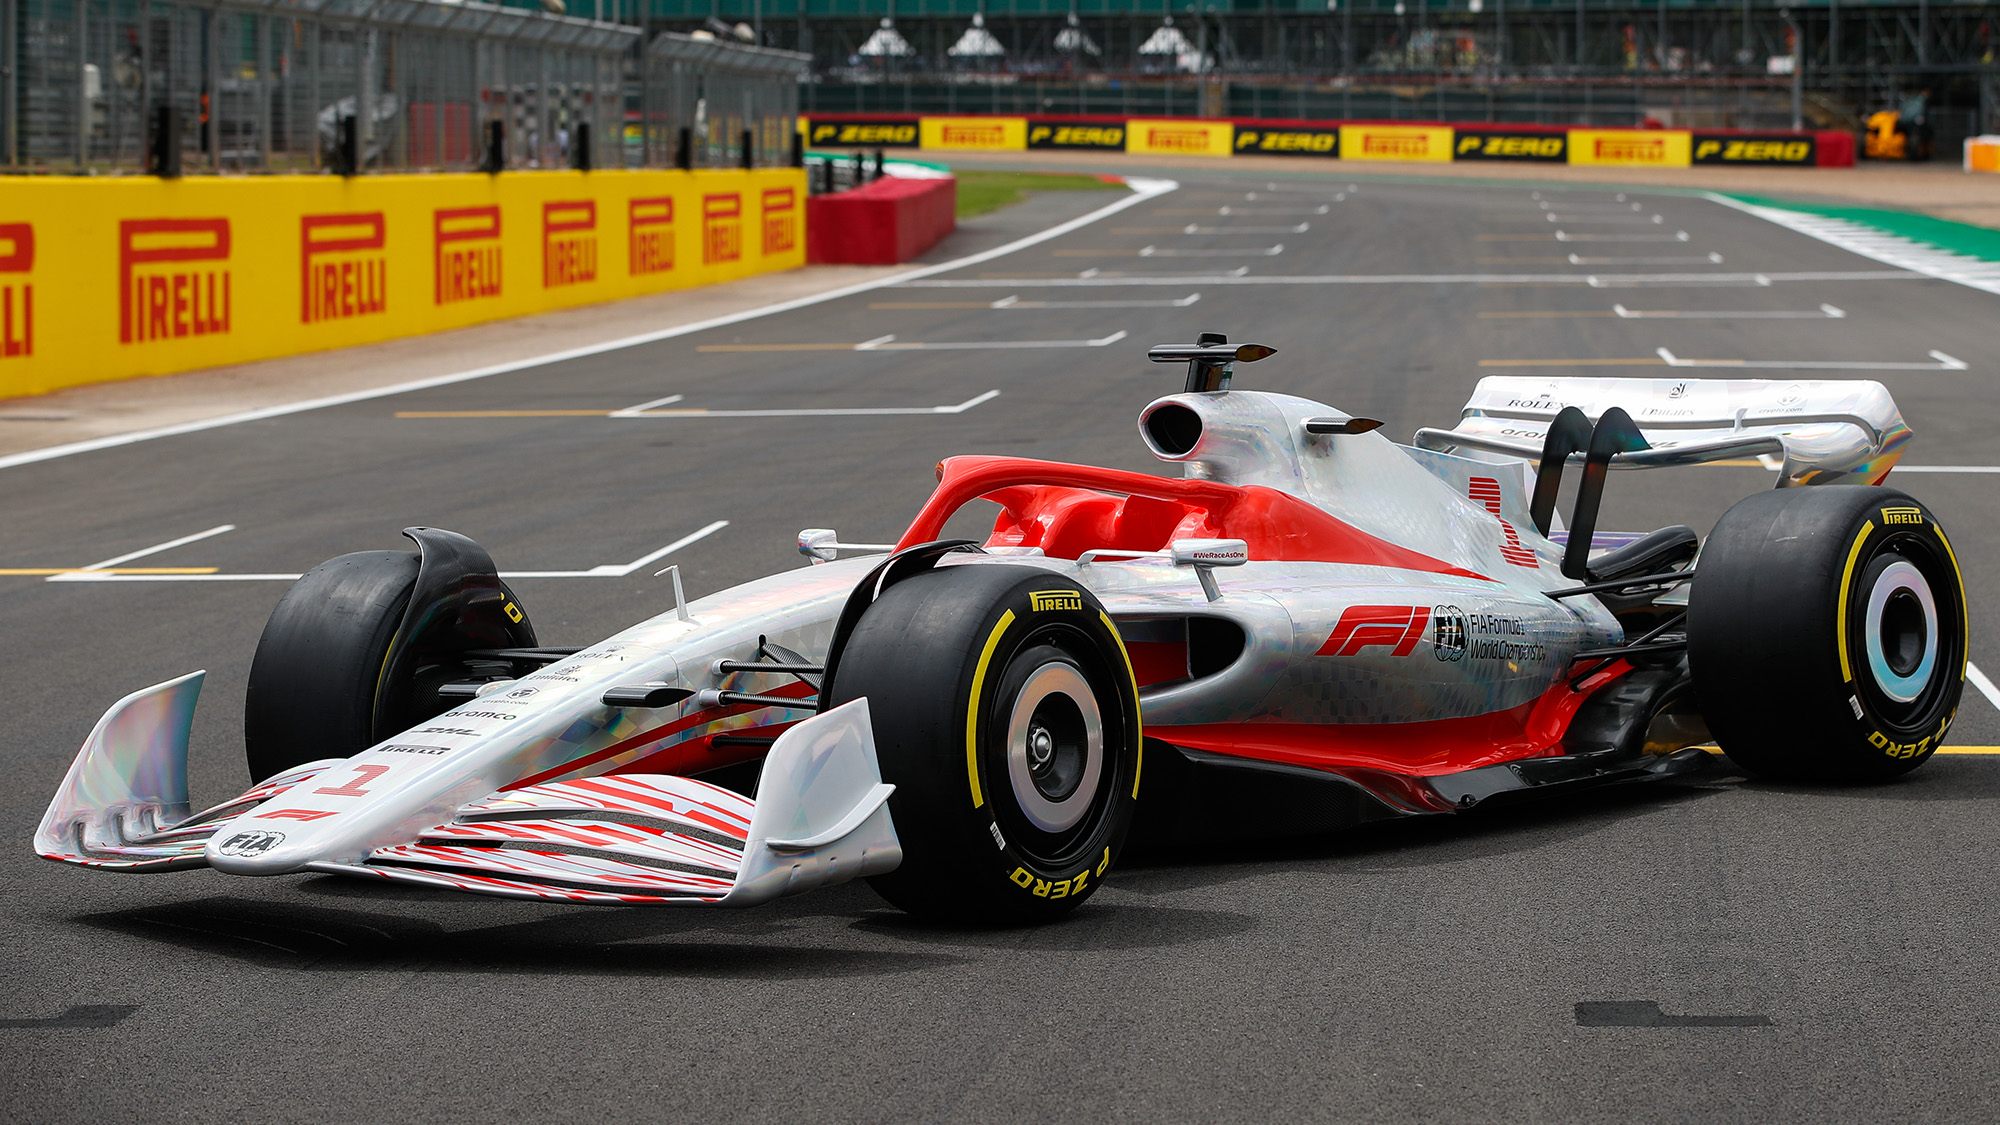 Em Silverstone, F1 mostra novo carro e testa novo modelo de